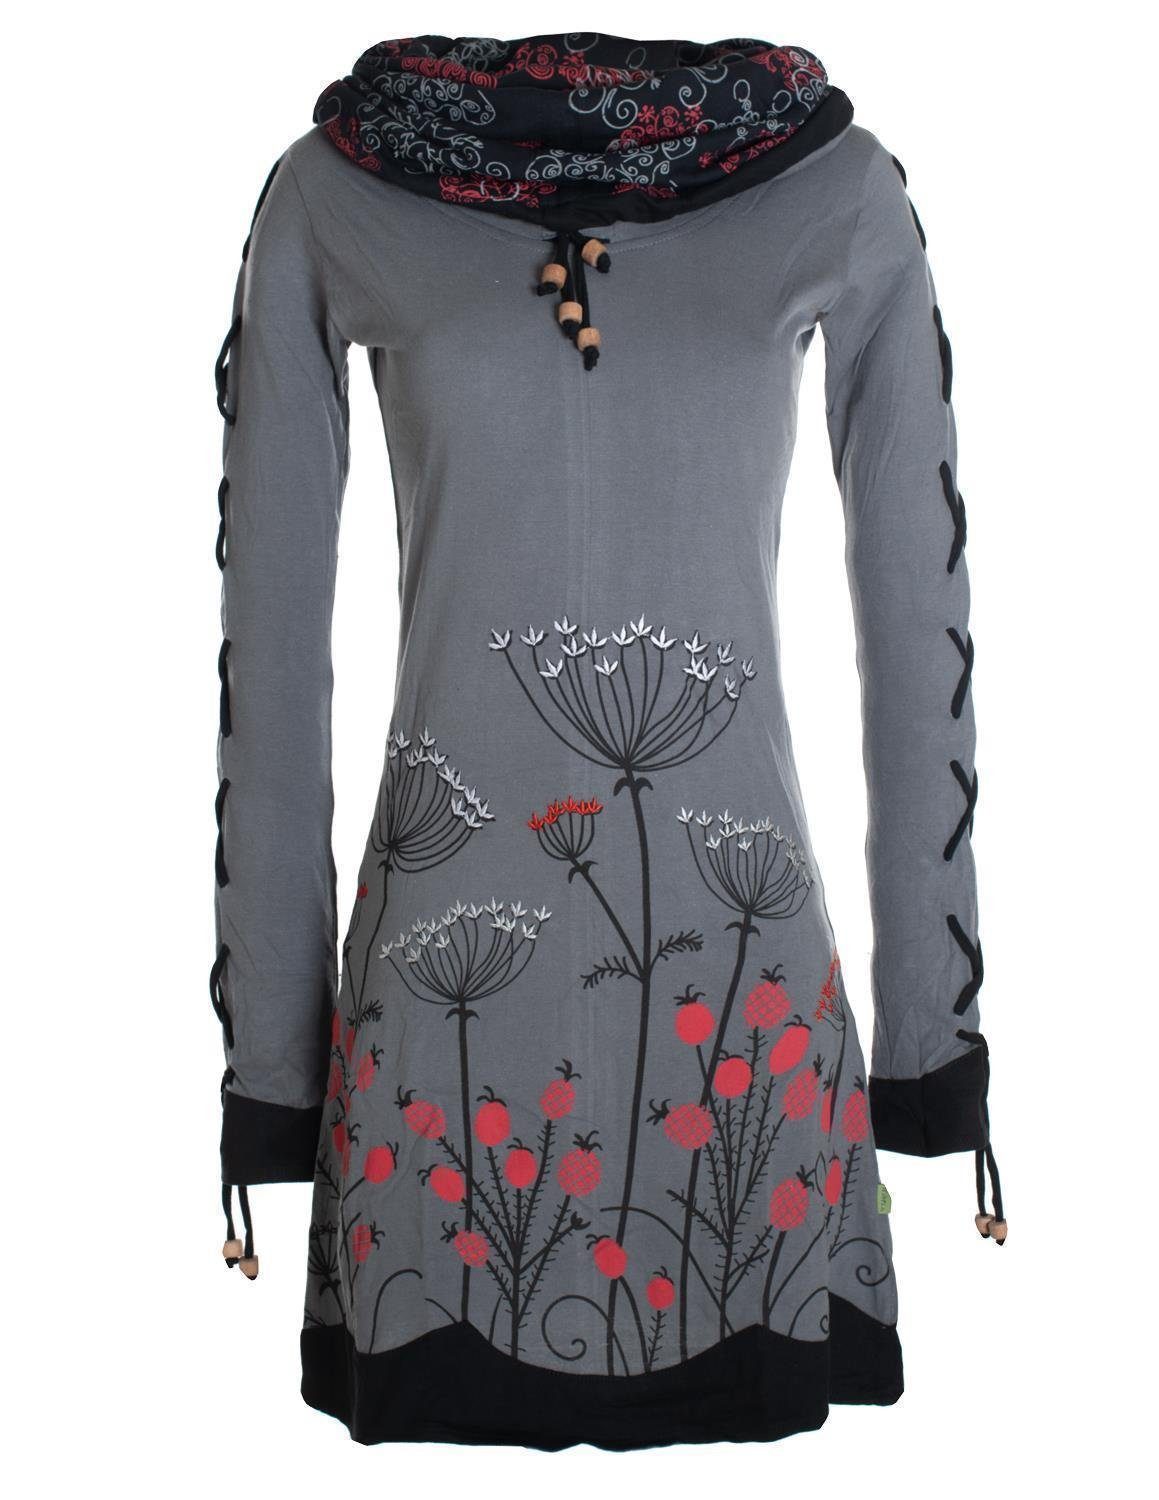 Vishes Jerseykleid Blumenkleid Langarm-Shirtkleid mit Schalkragen Hippie, Boho, Elfen Style grau